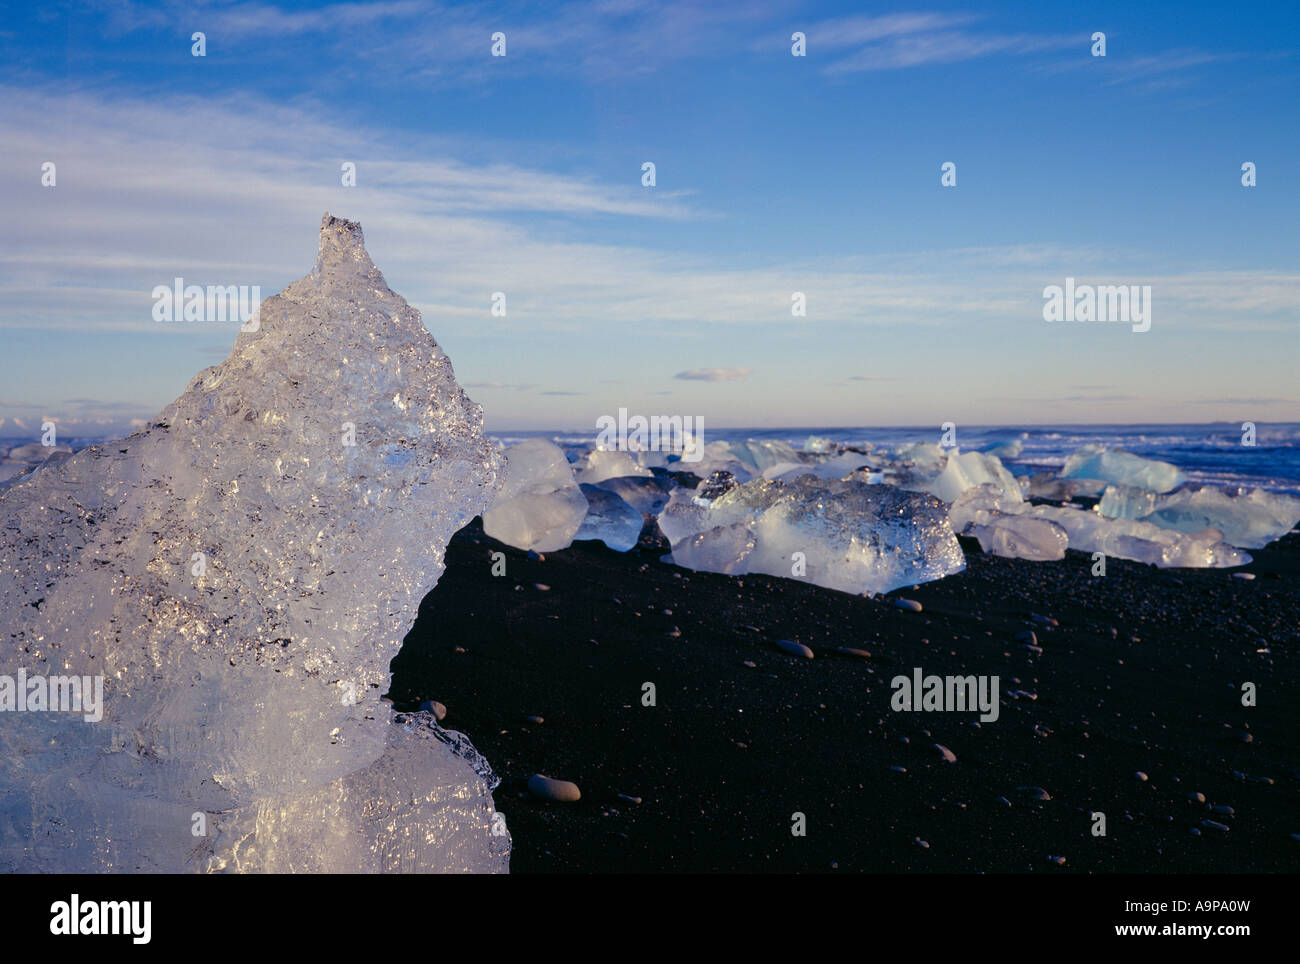 Iceb sur le littoral près de cubes Islande Jokulsarlon Banque D'Images